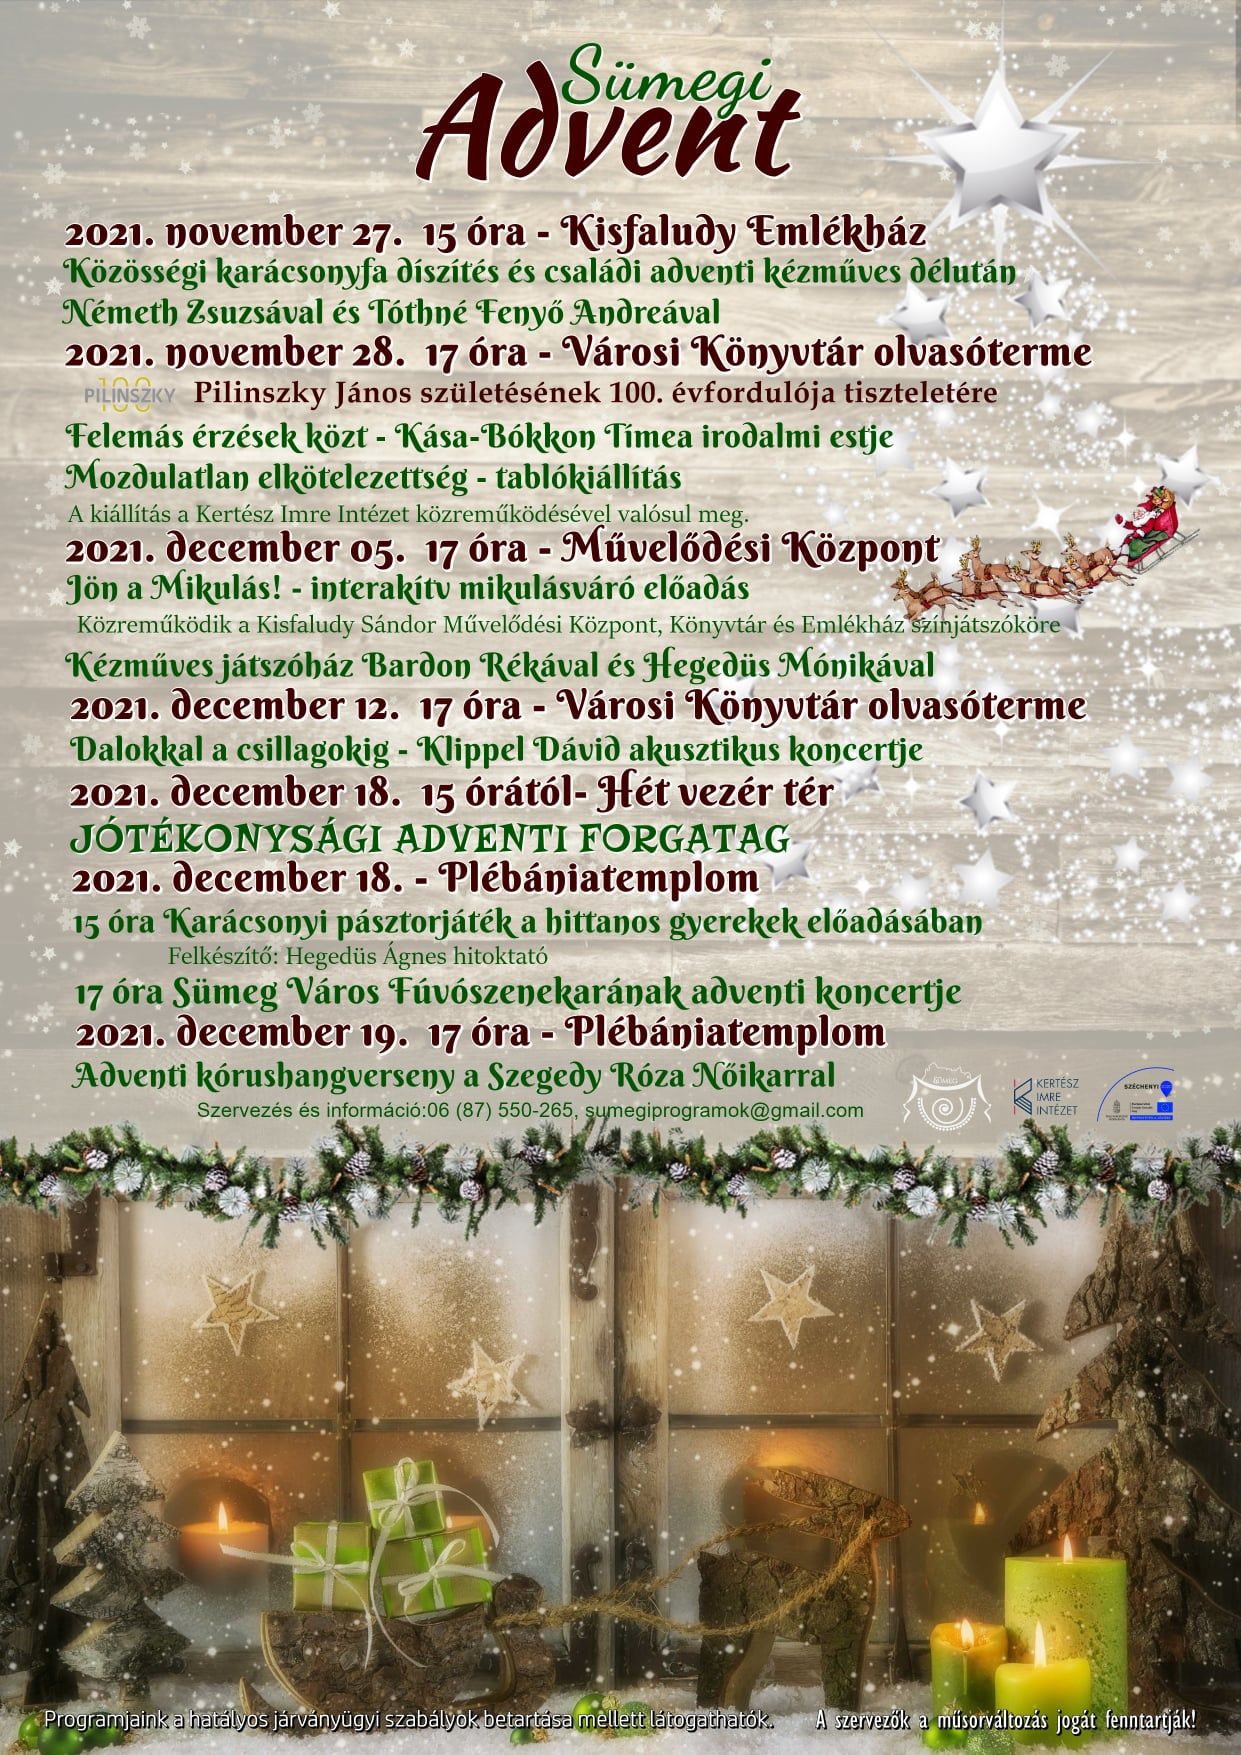 Sümegi Advent: Karácsonyi pásztorjáték a hittanos gyerekek előadásában és Sümeg Város Fúvószenekarának adventi koncertje